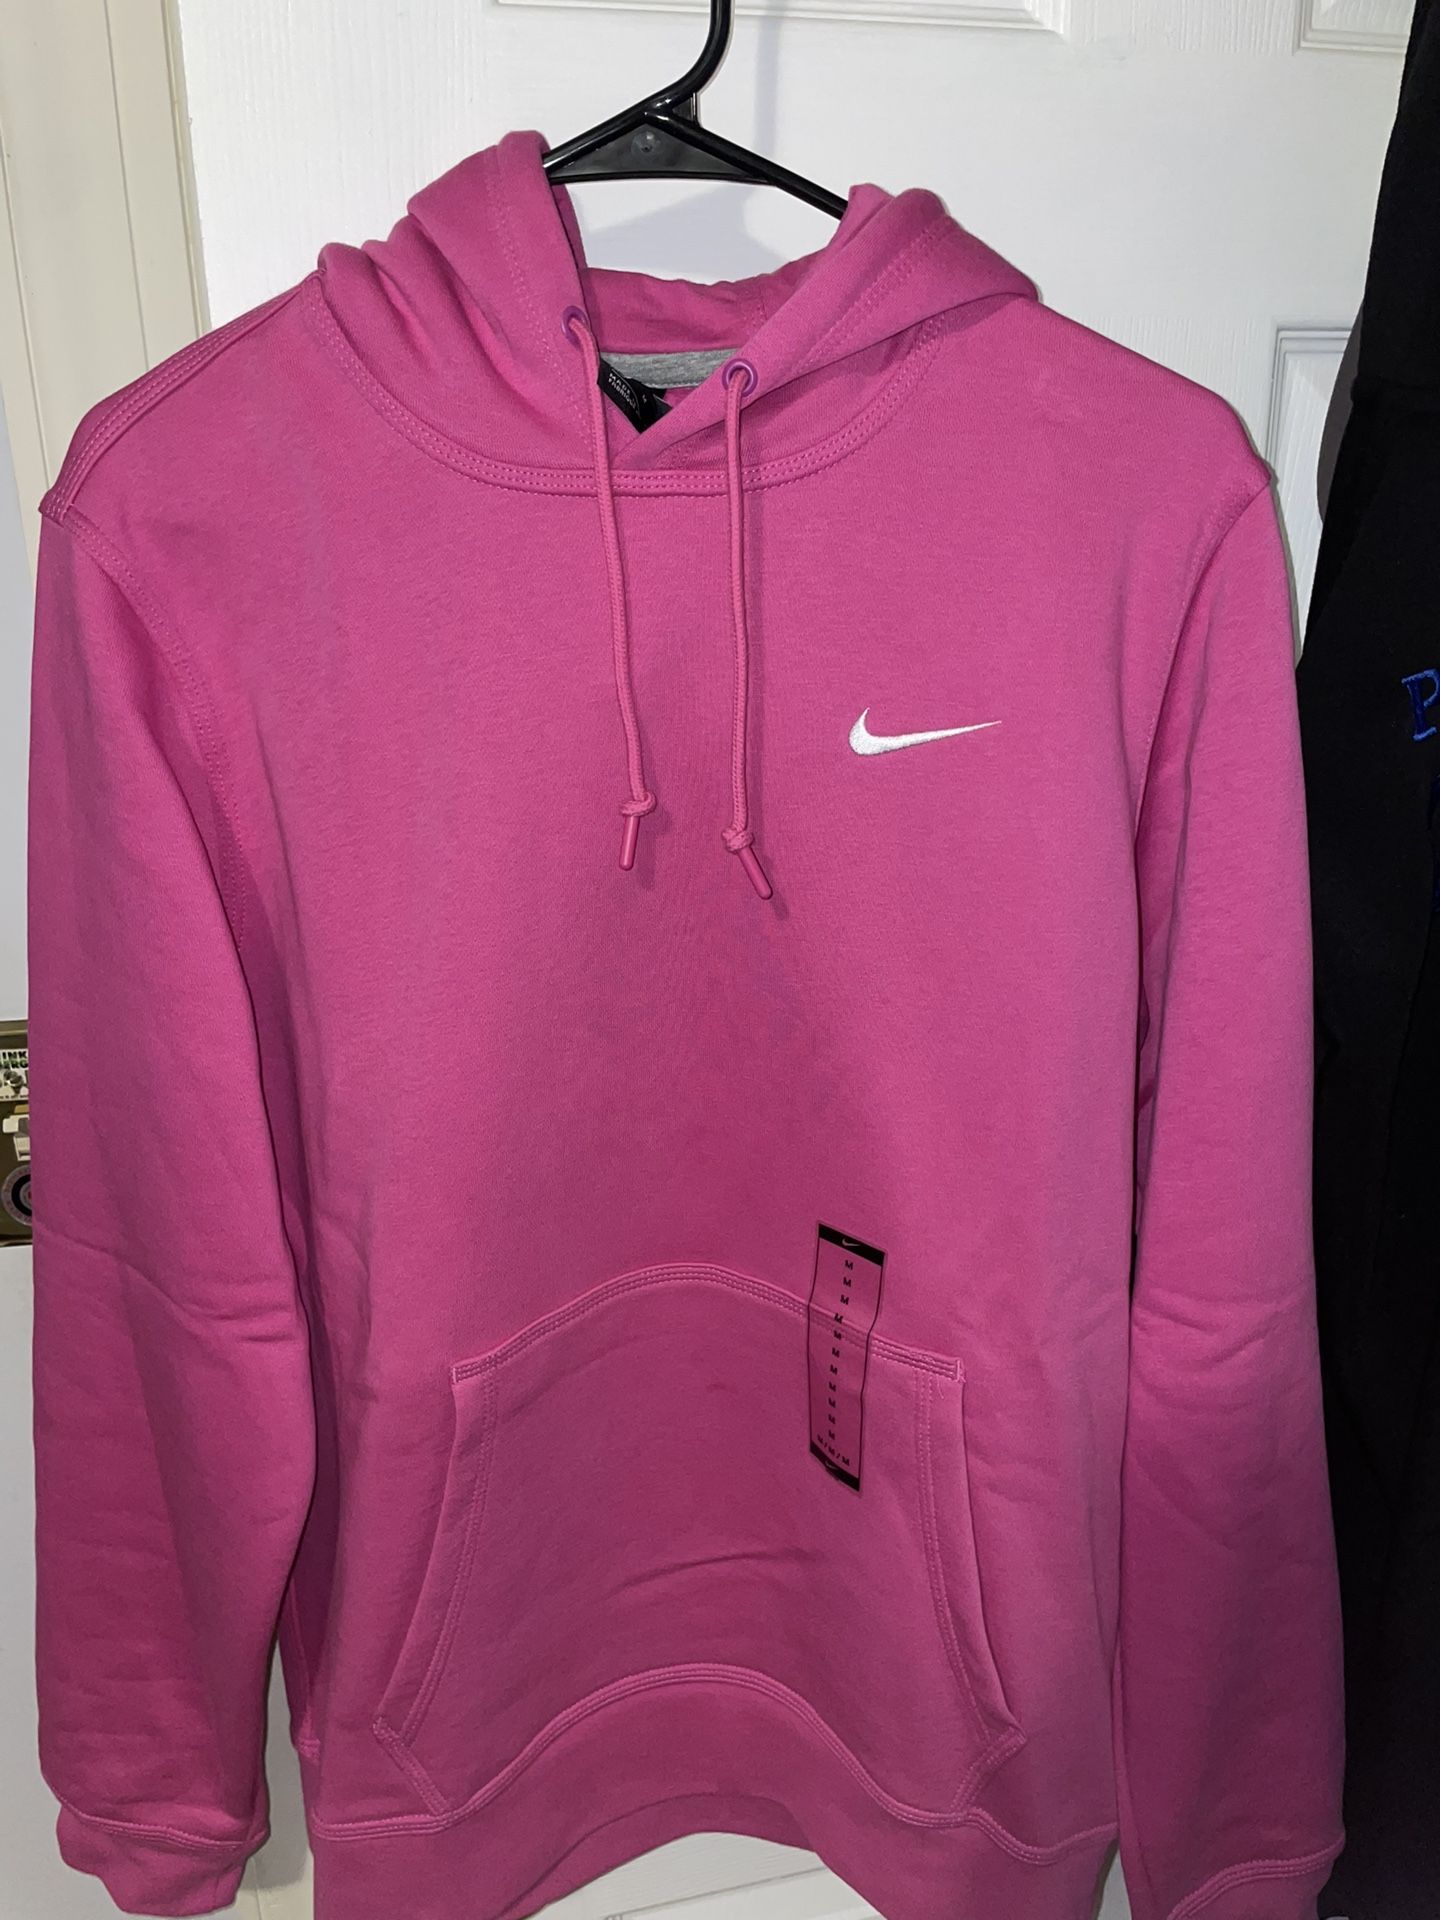 New pink nike hoodie